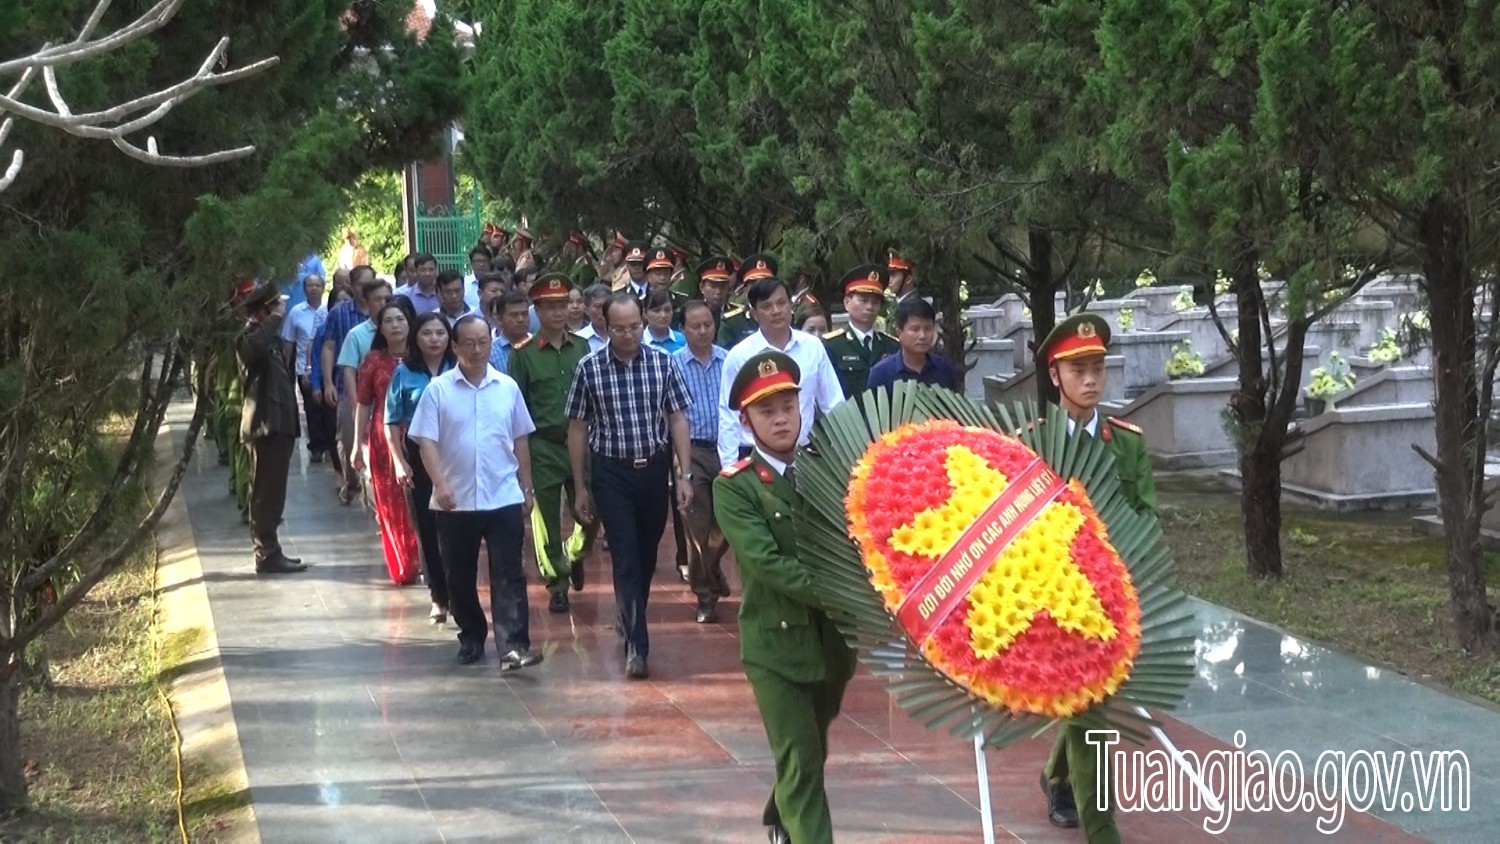 Huyện Tuần Giáo dâng hương tưởng niệm các anh hùng liệt sỹ nhân kỷ niệm 70 năm ngày giải phóng huyện